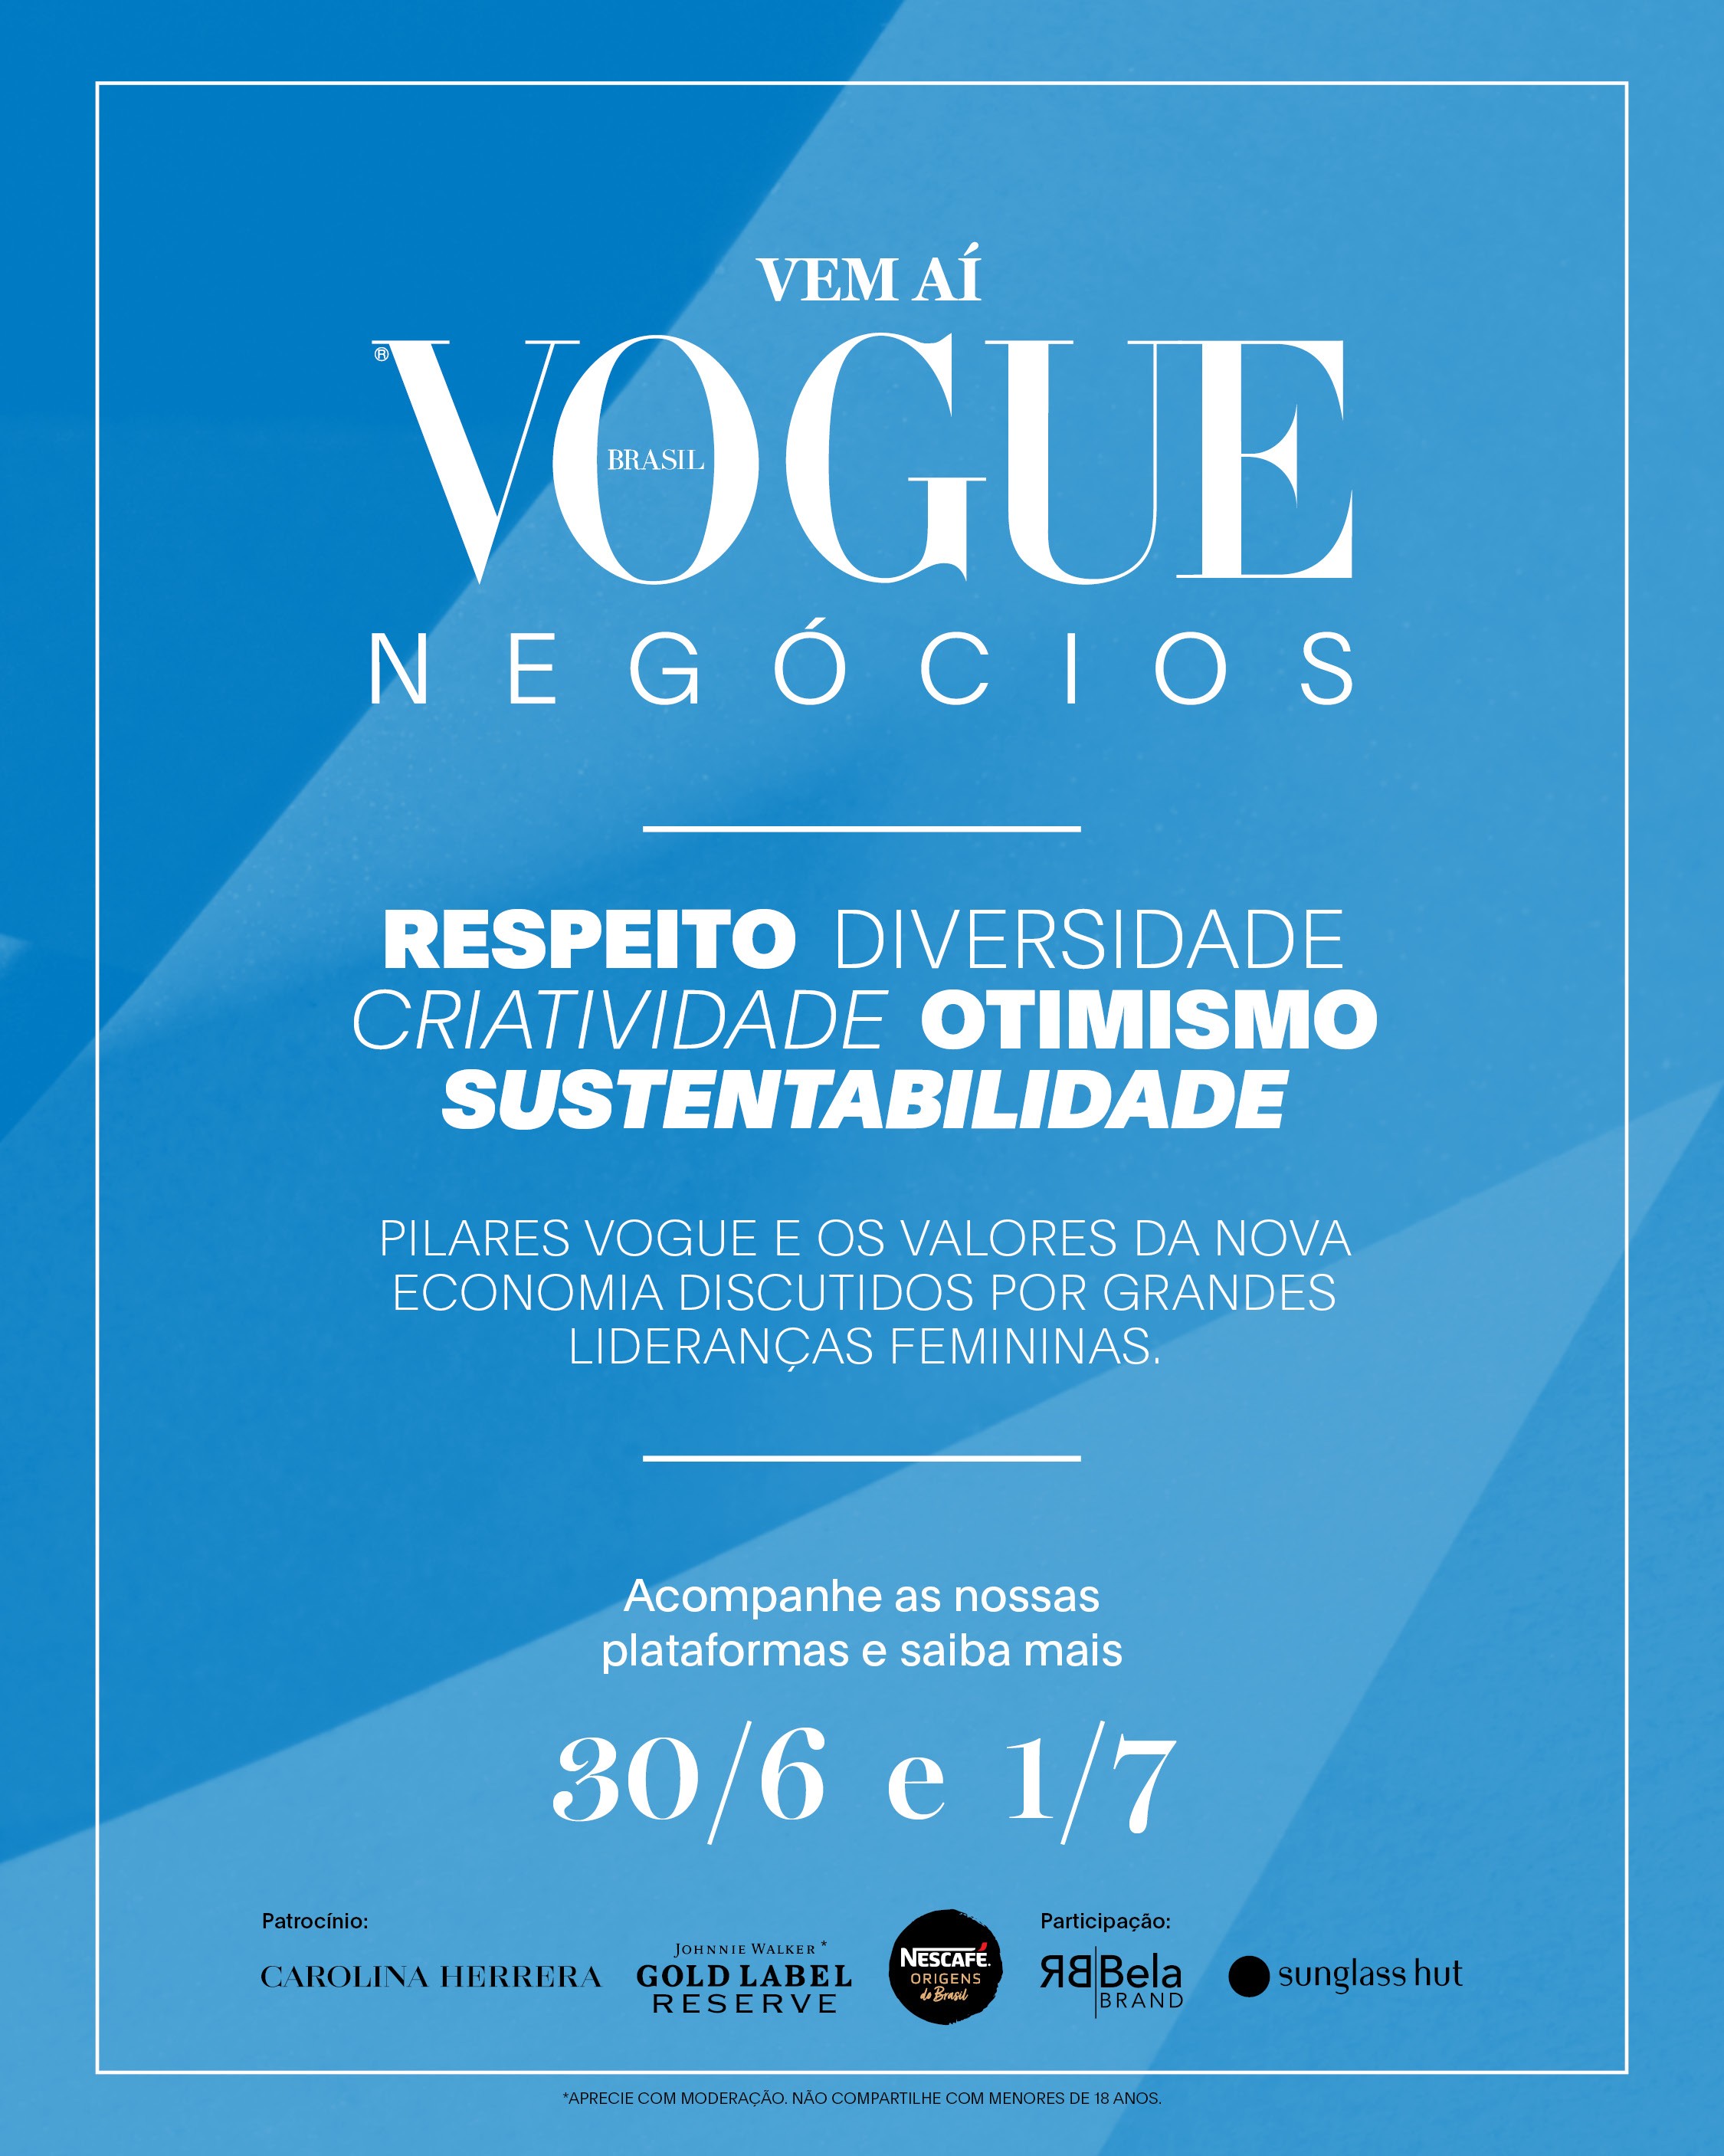 Vogue Negócios (Foto: Divulgação)